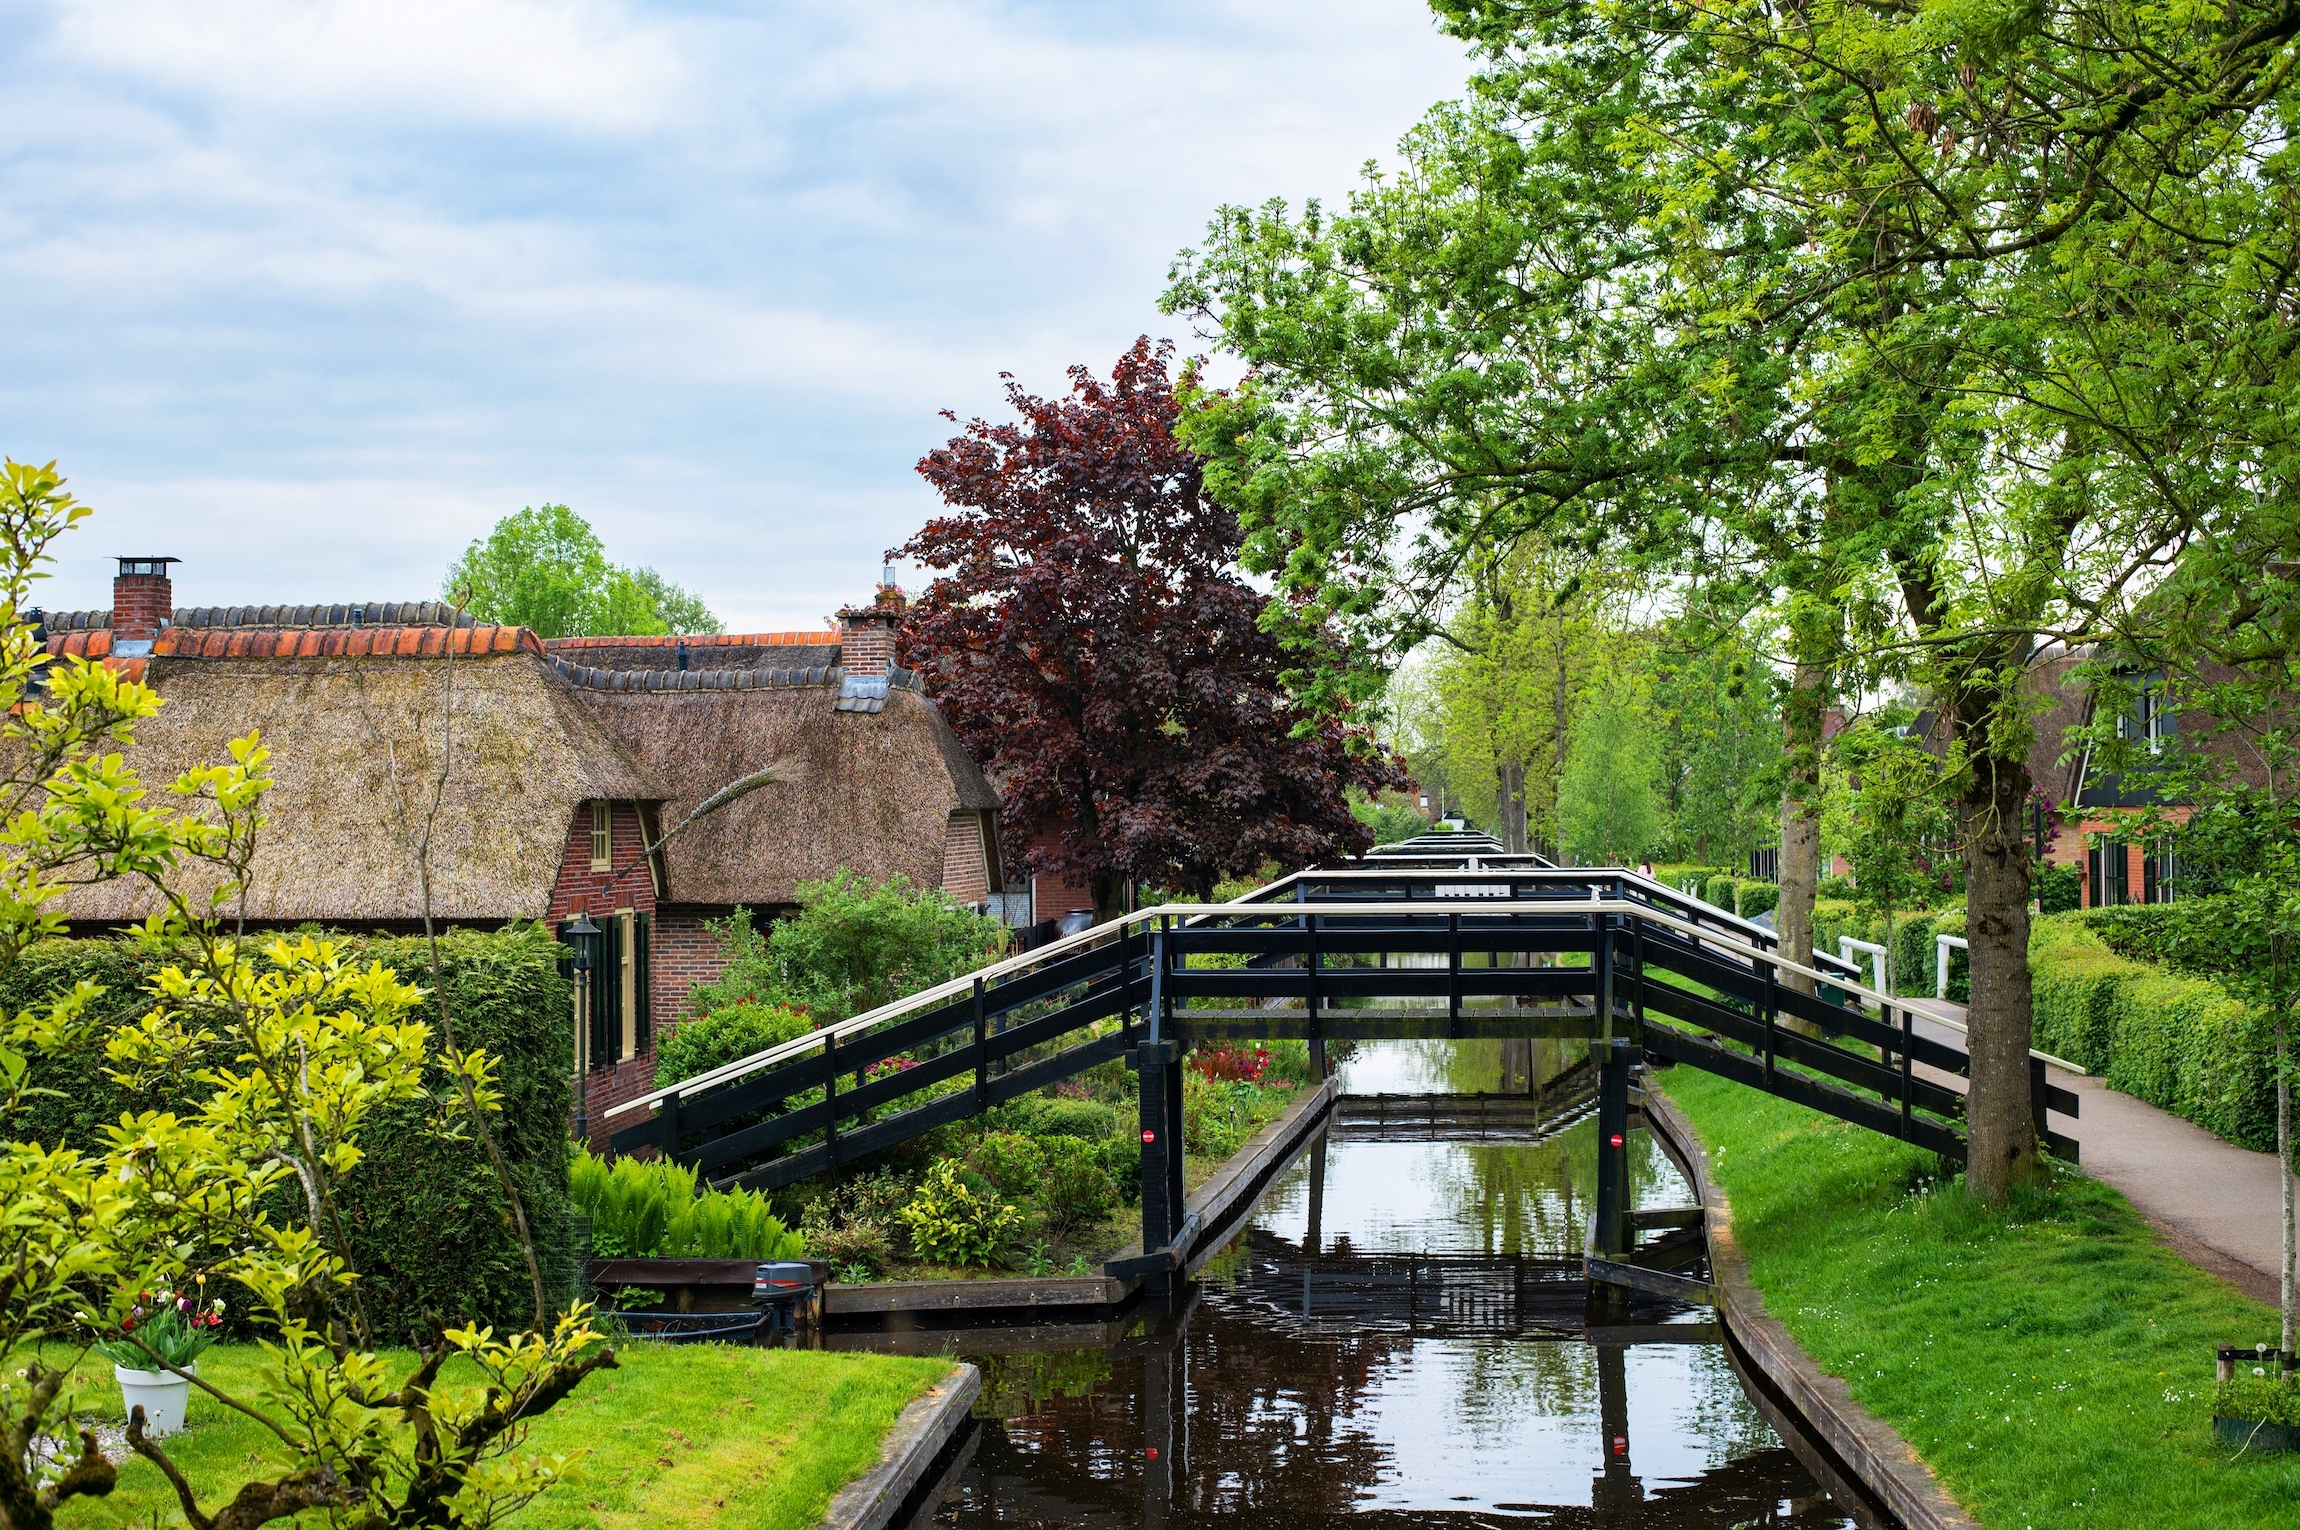 Widok na wioskę Giethoorn znaną jako "Wenecja Północy" w Holandii w maju. Pływanie łodzią po kanale Giethoorn z malowniczym widokiem na domy i mosty. Holenderska atrakcja turystyczna.